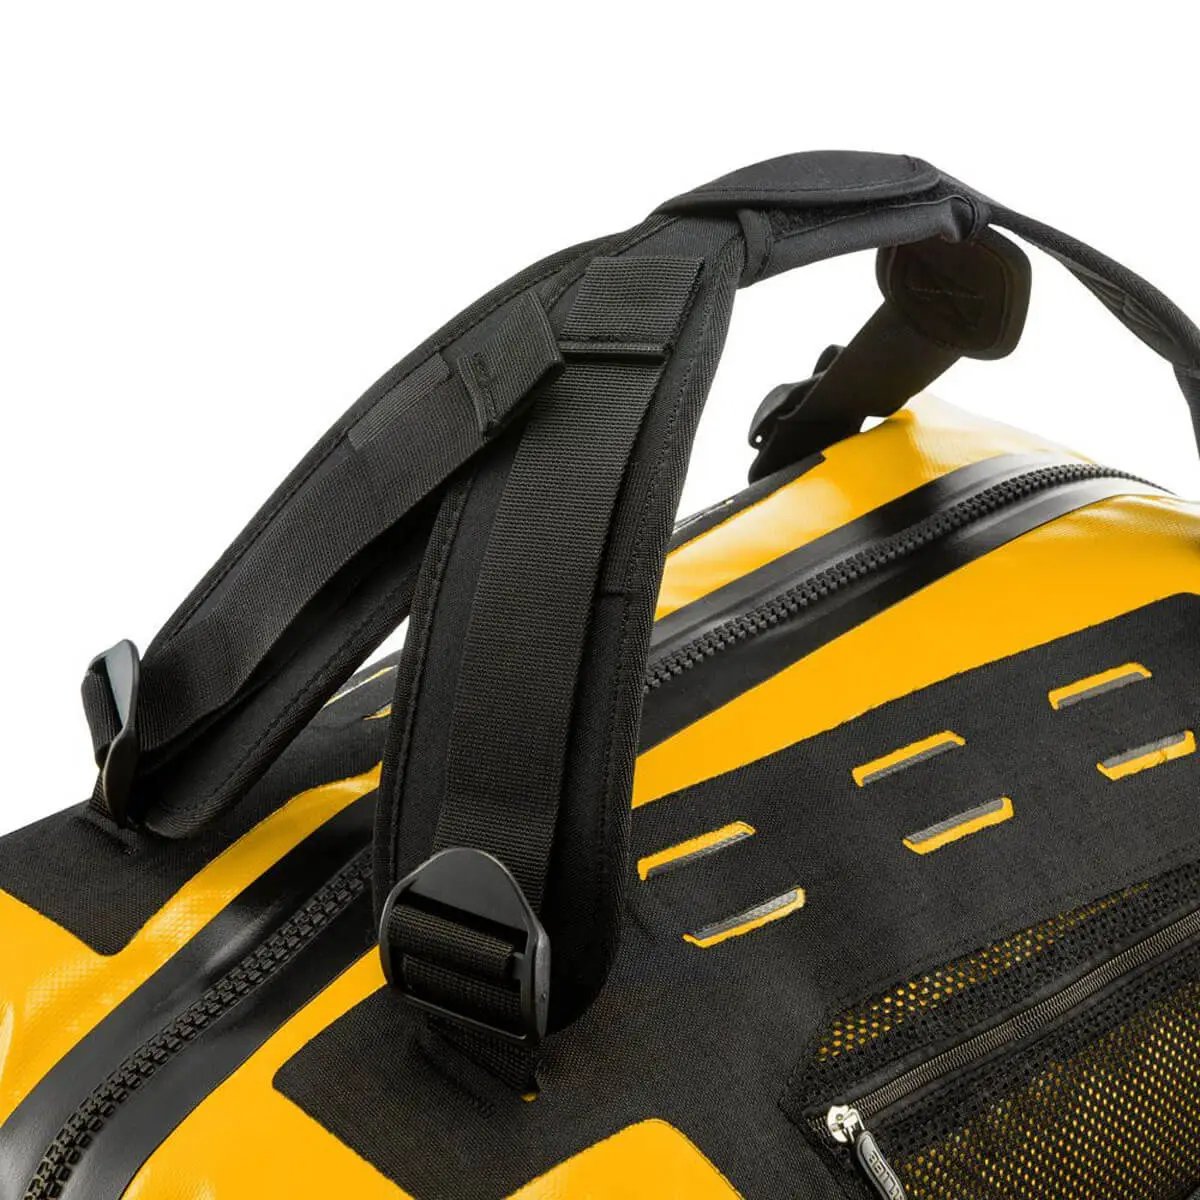 Ortlieb Duffle 40L Waterproof Travel Bag - John Bull Clothing